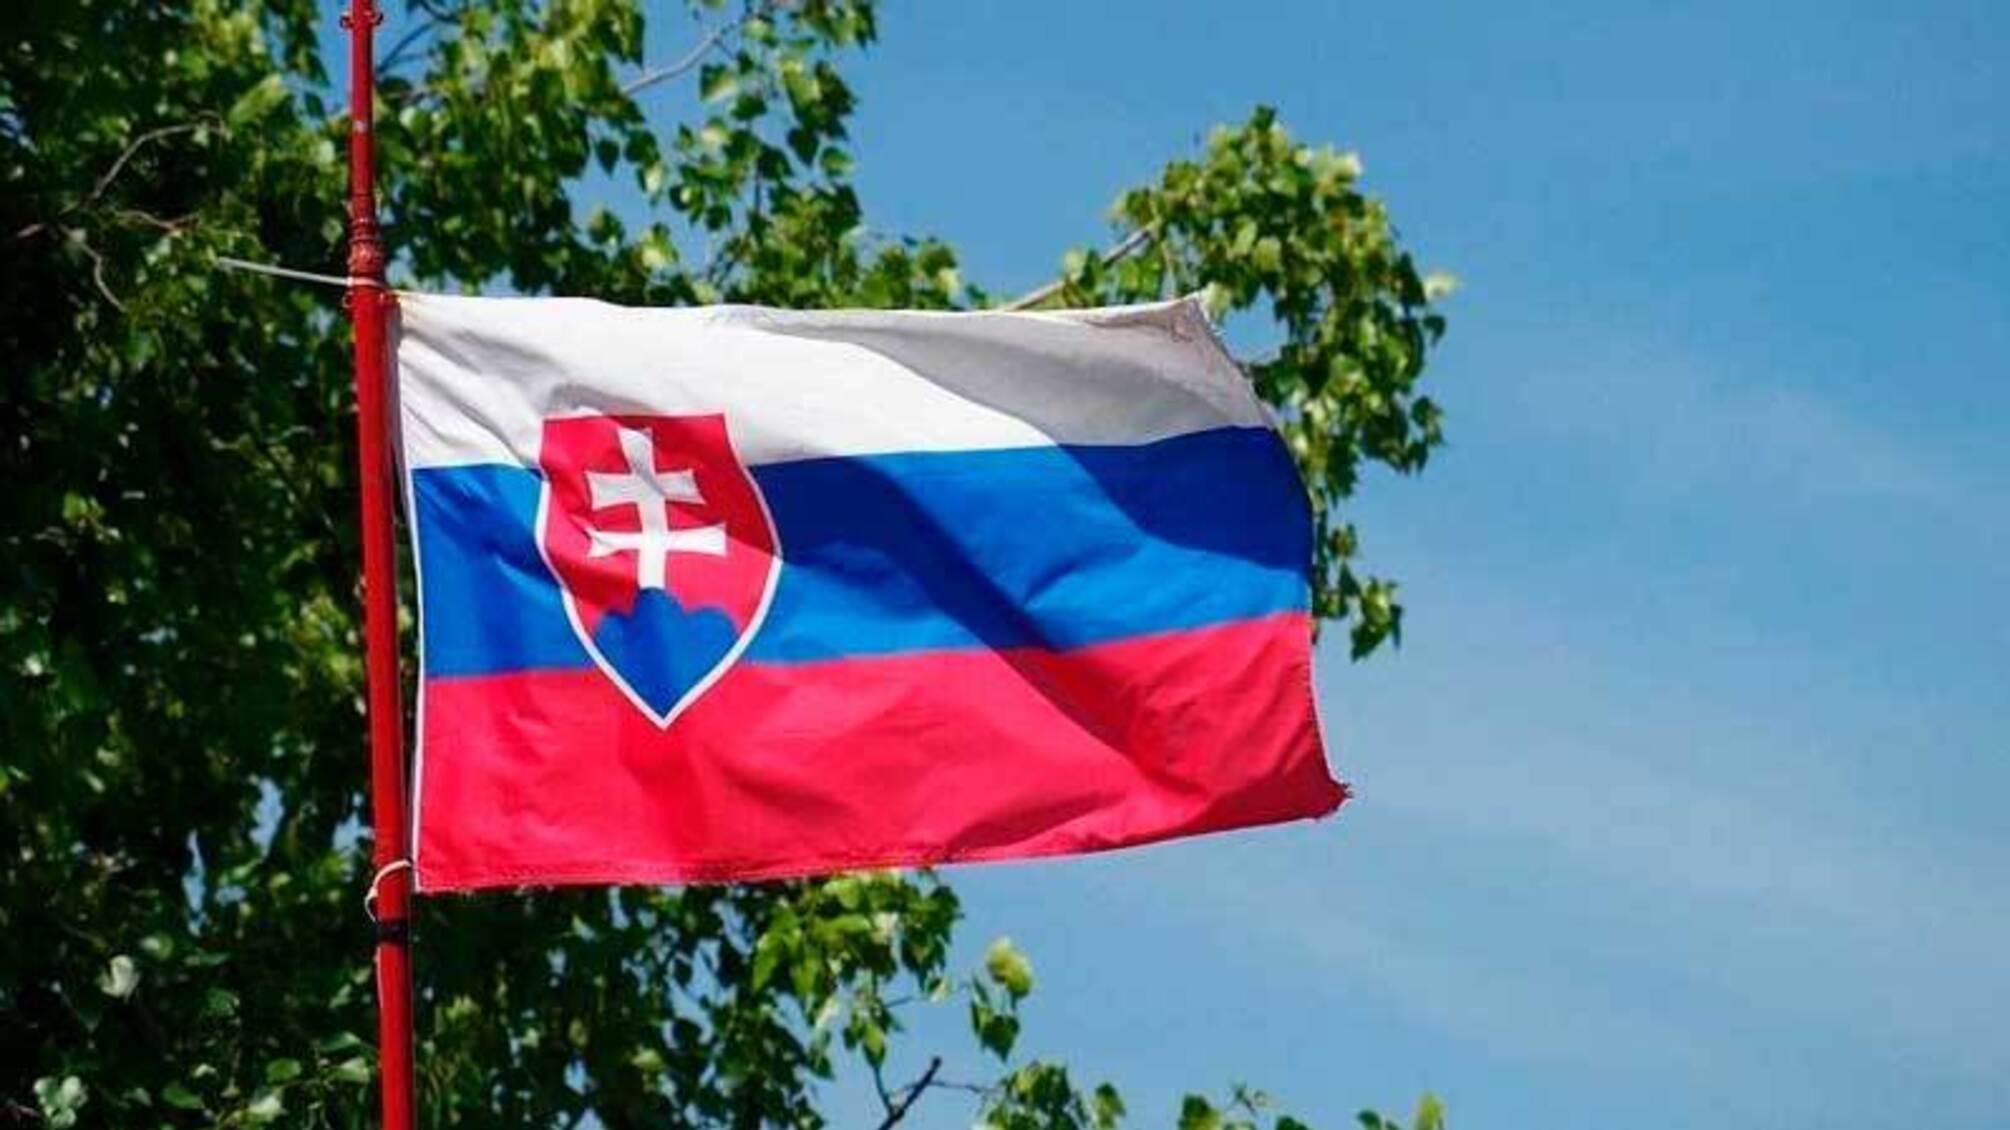 Словаччина прийняла рішення щодо допомоги Україні після перемоги проросійської партії на виборах